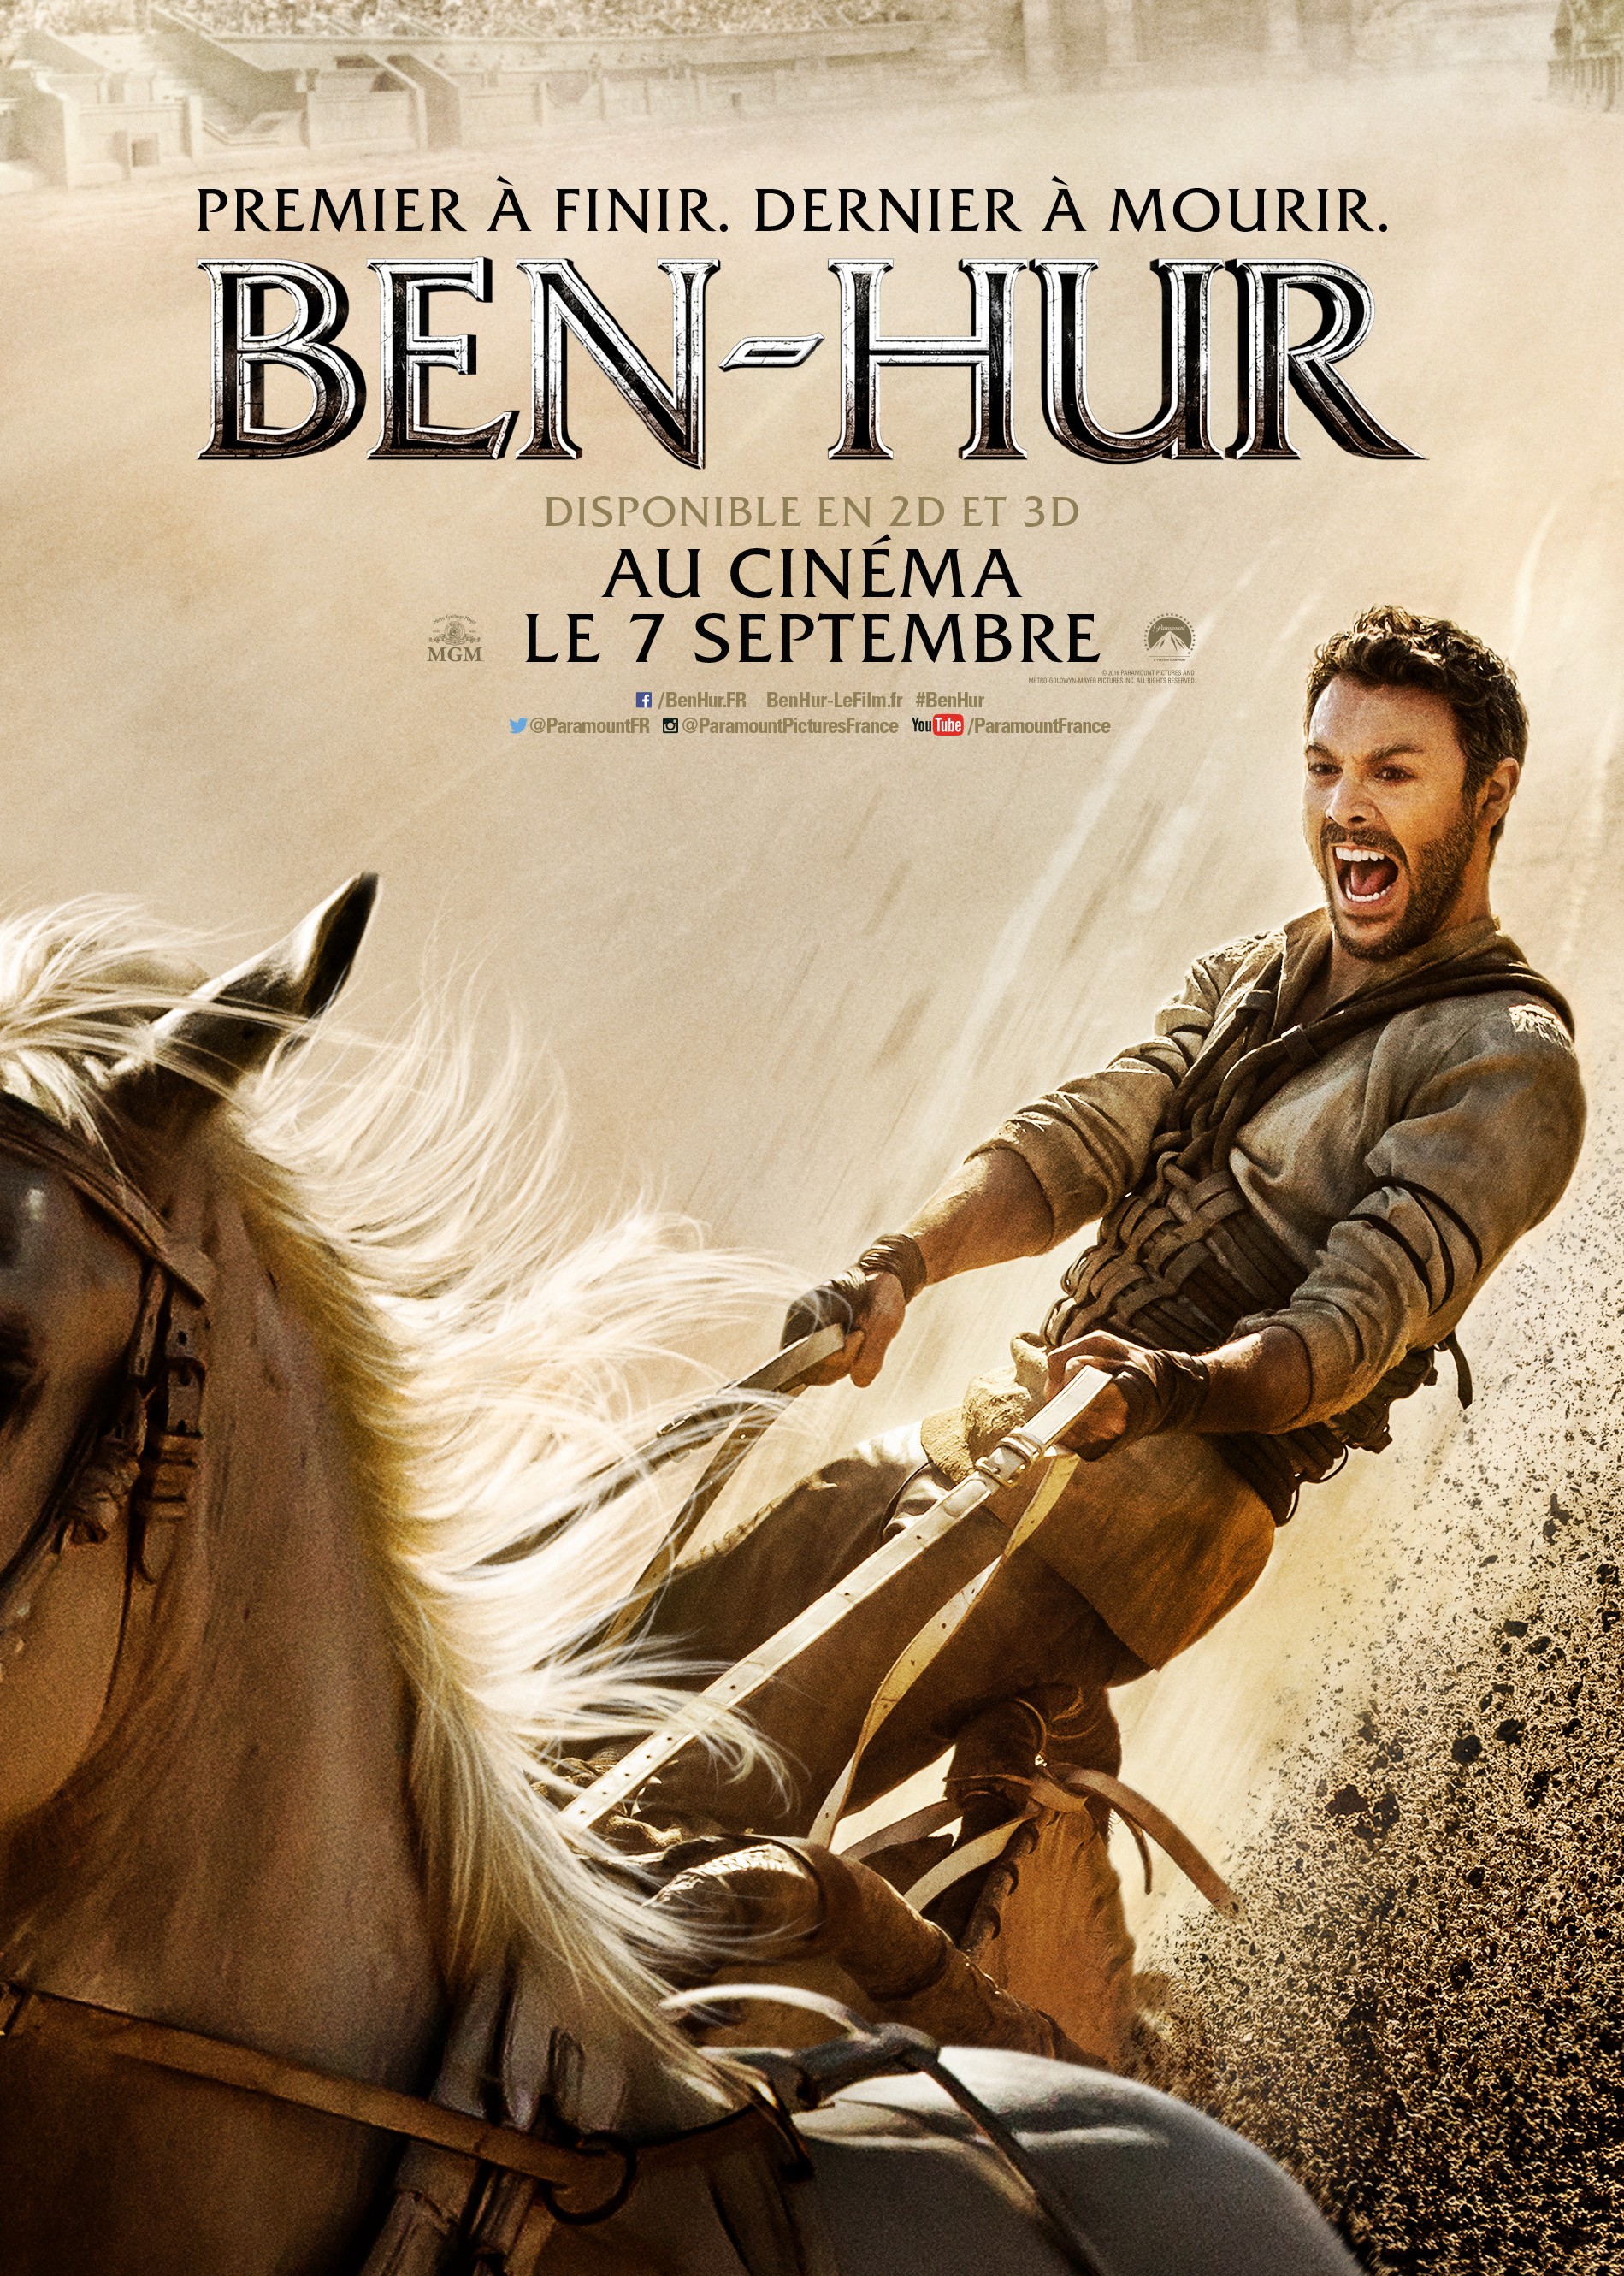 Hoàng Tử Ben-Hur 2016